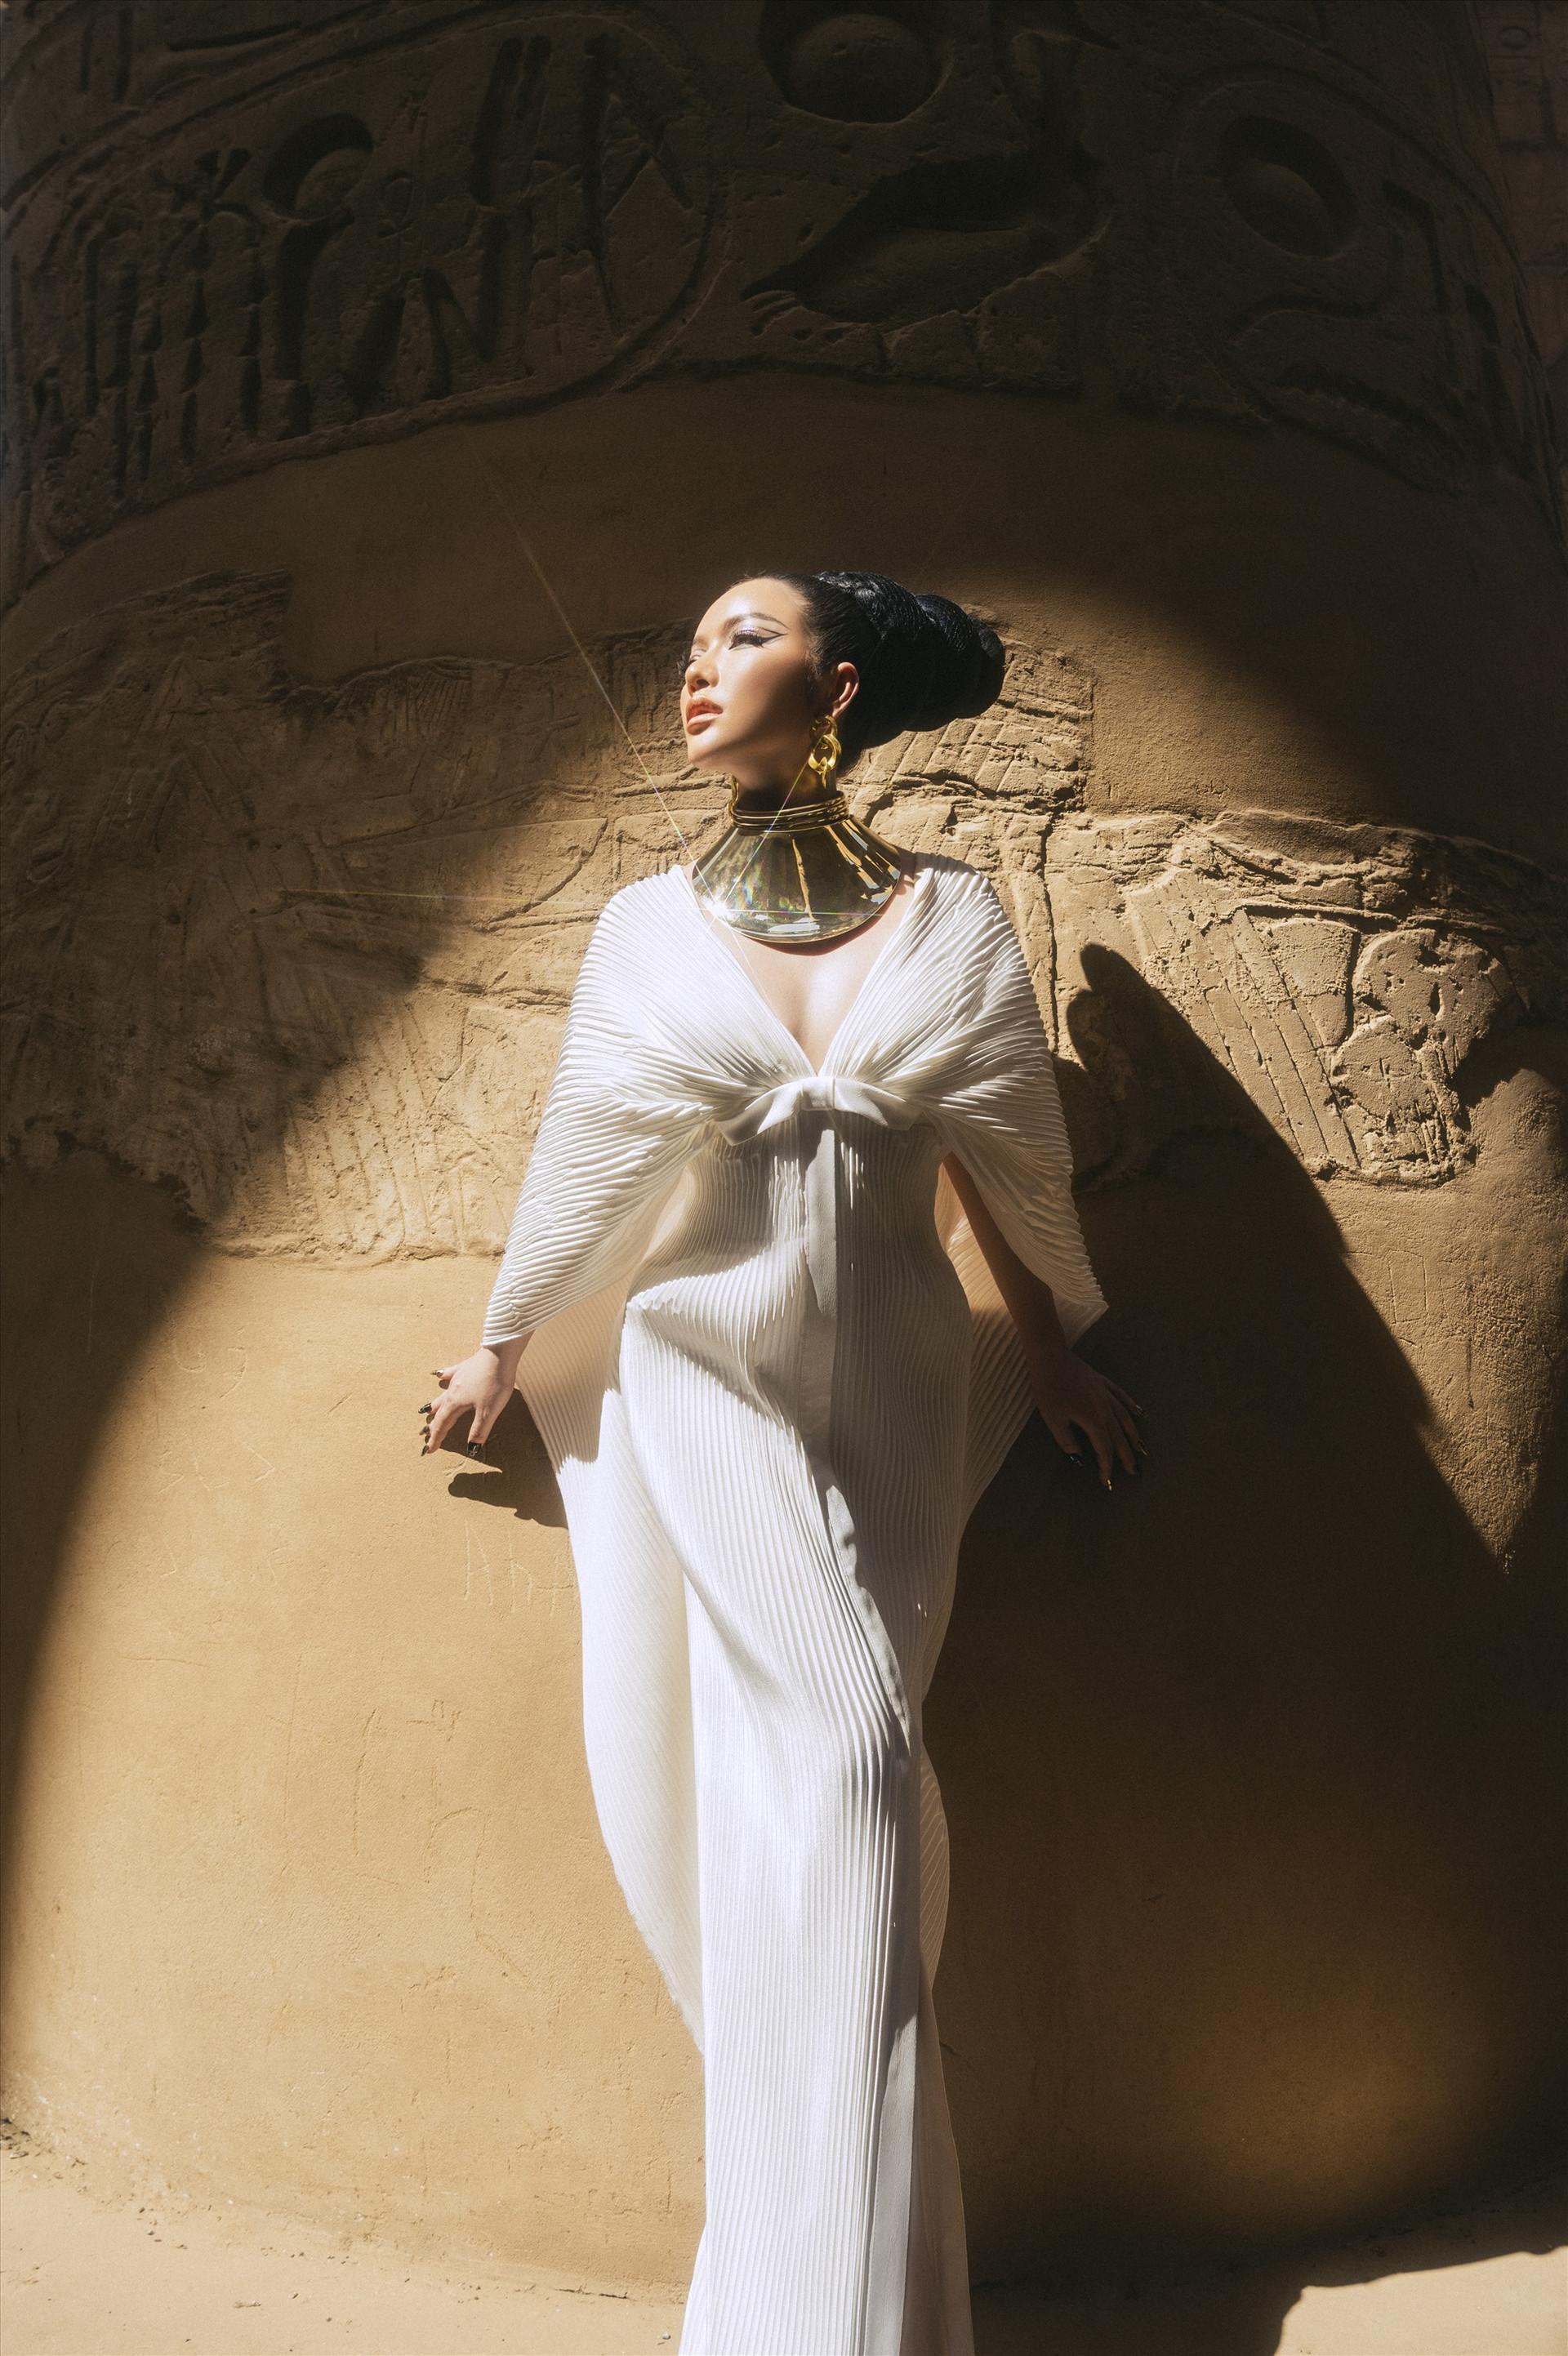 Cô hoàn thiện phong cách Nữ hoàng Ai Cập với những trang phục và phụ kiện độc đáo, thu hút khó cưỡng. Một chiếc đầm maxi trắng hay chiếc vòng cổ to bản là những phụ kiện phù hợp để thể hiện vẻ đẹp quyến rũ đậm chất Cleopatra. Ảnh: NSCC.